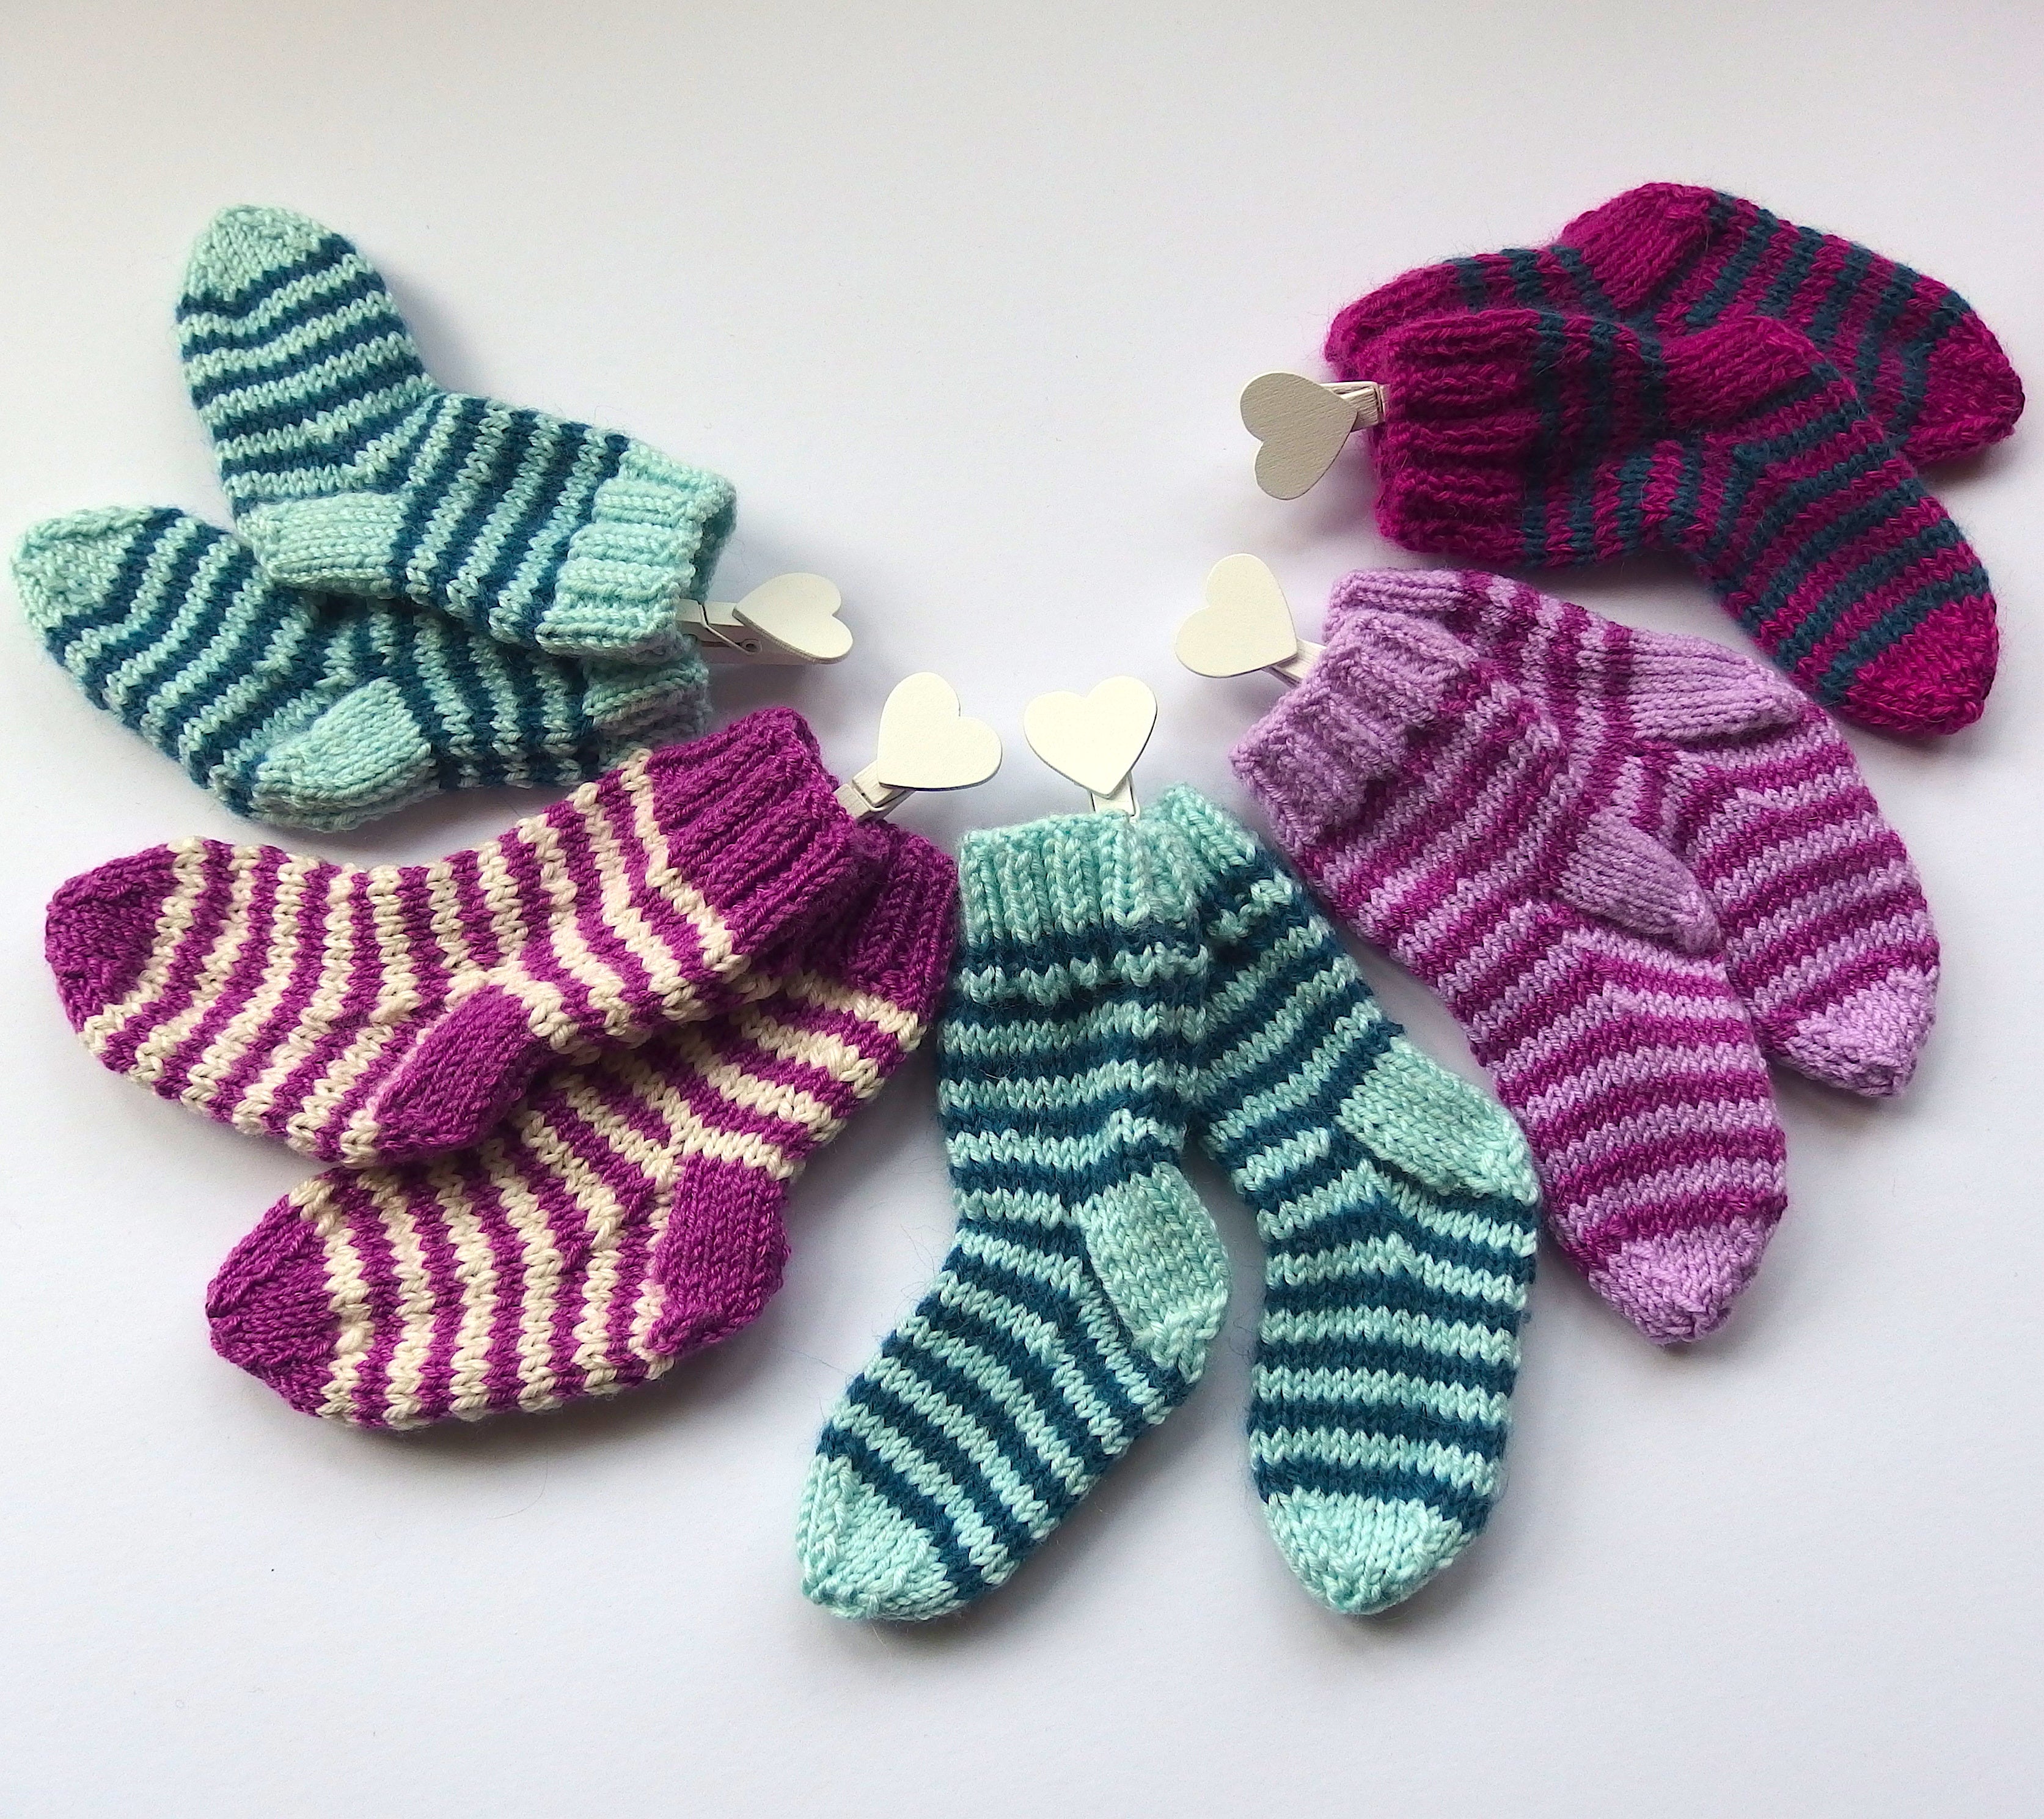 Baby Socks - made using 100% baby merino wool: green & mint